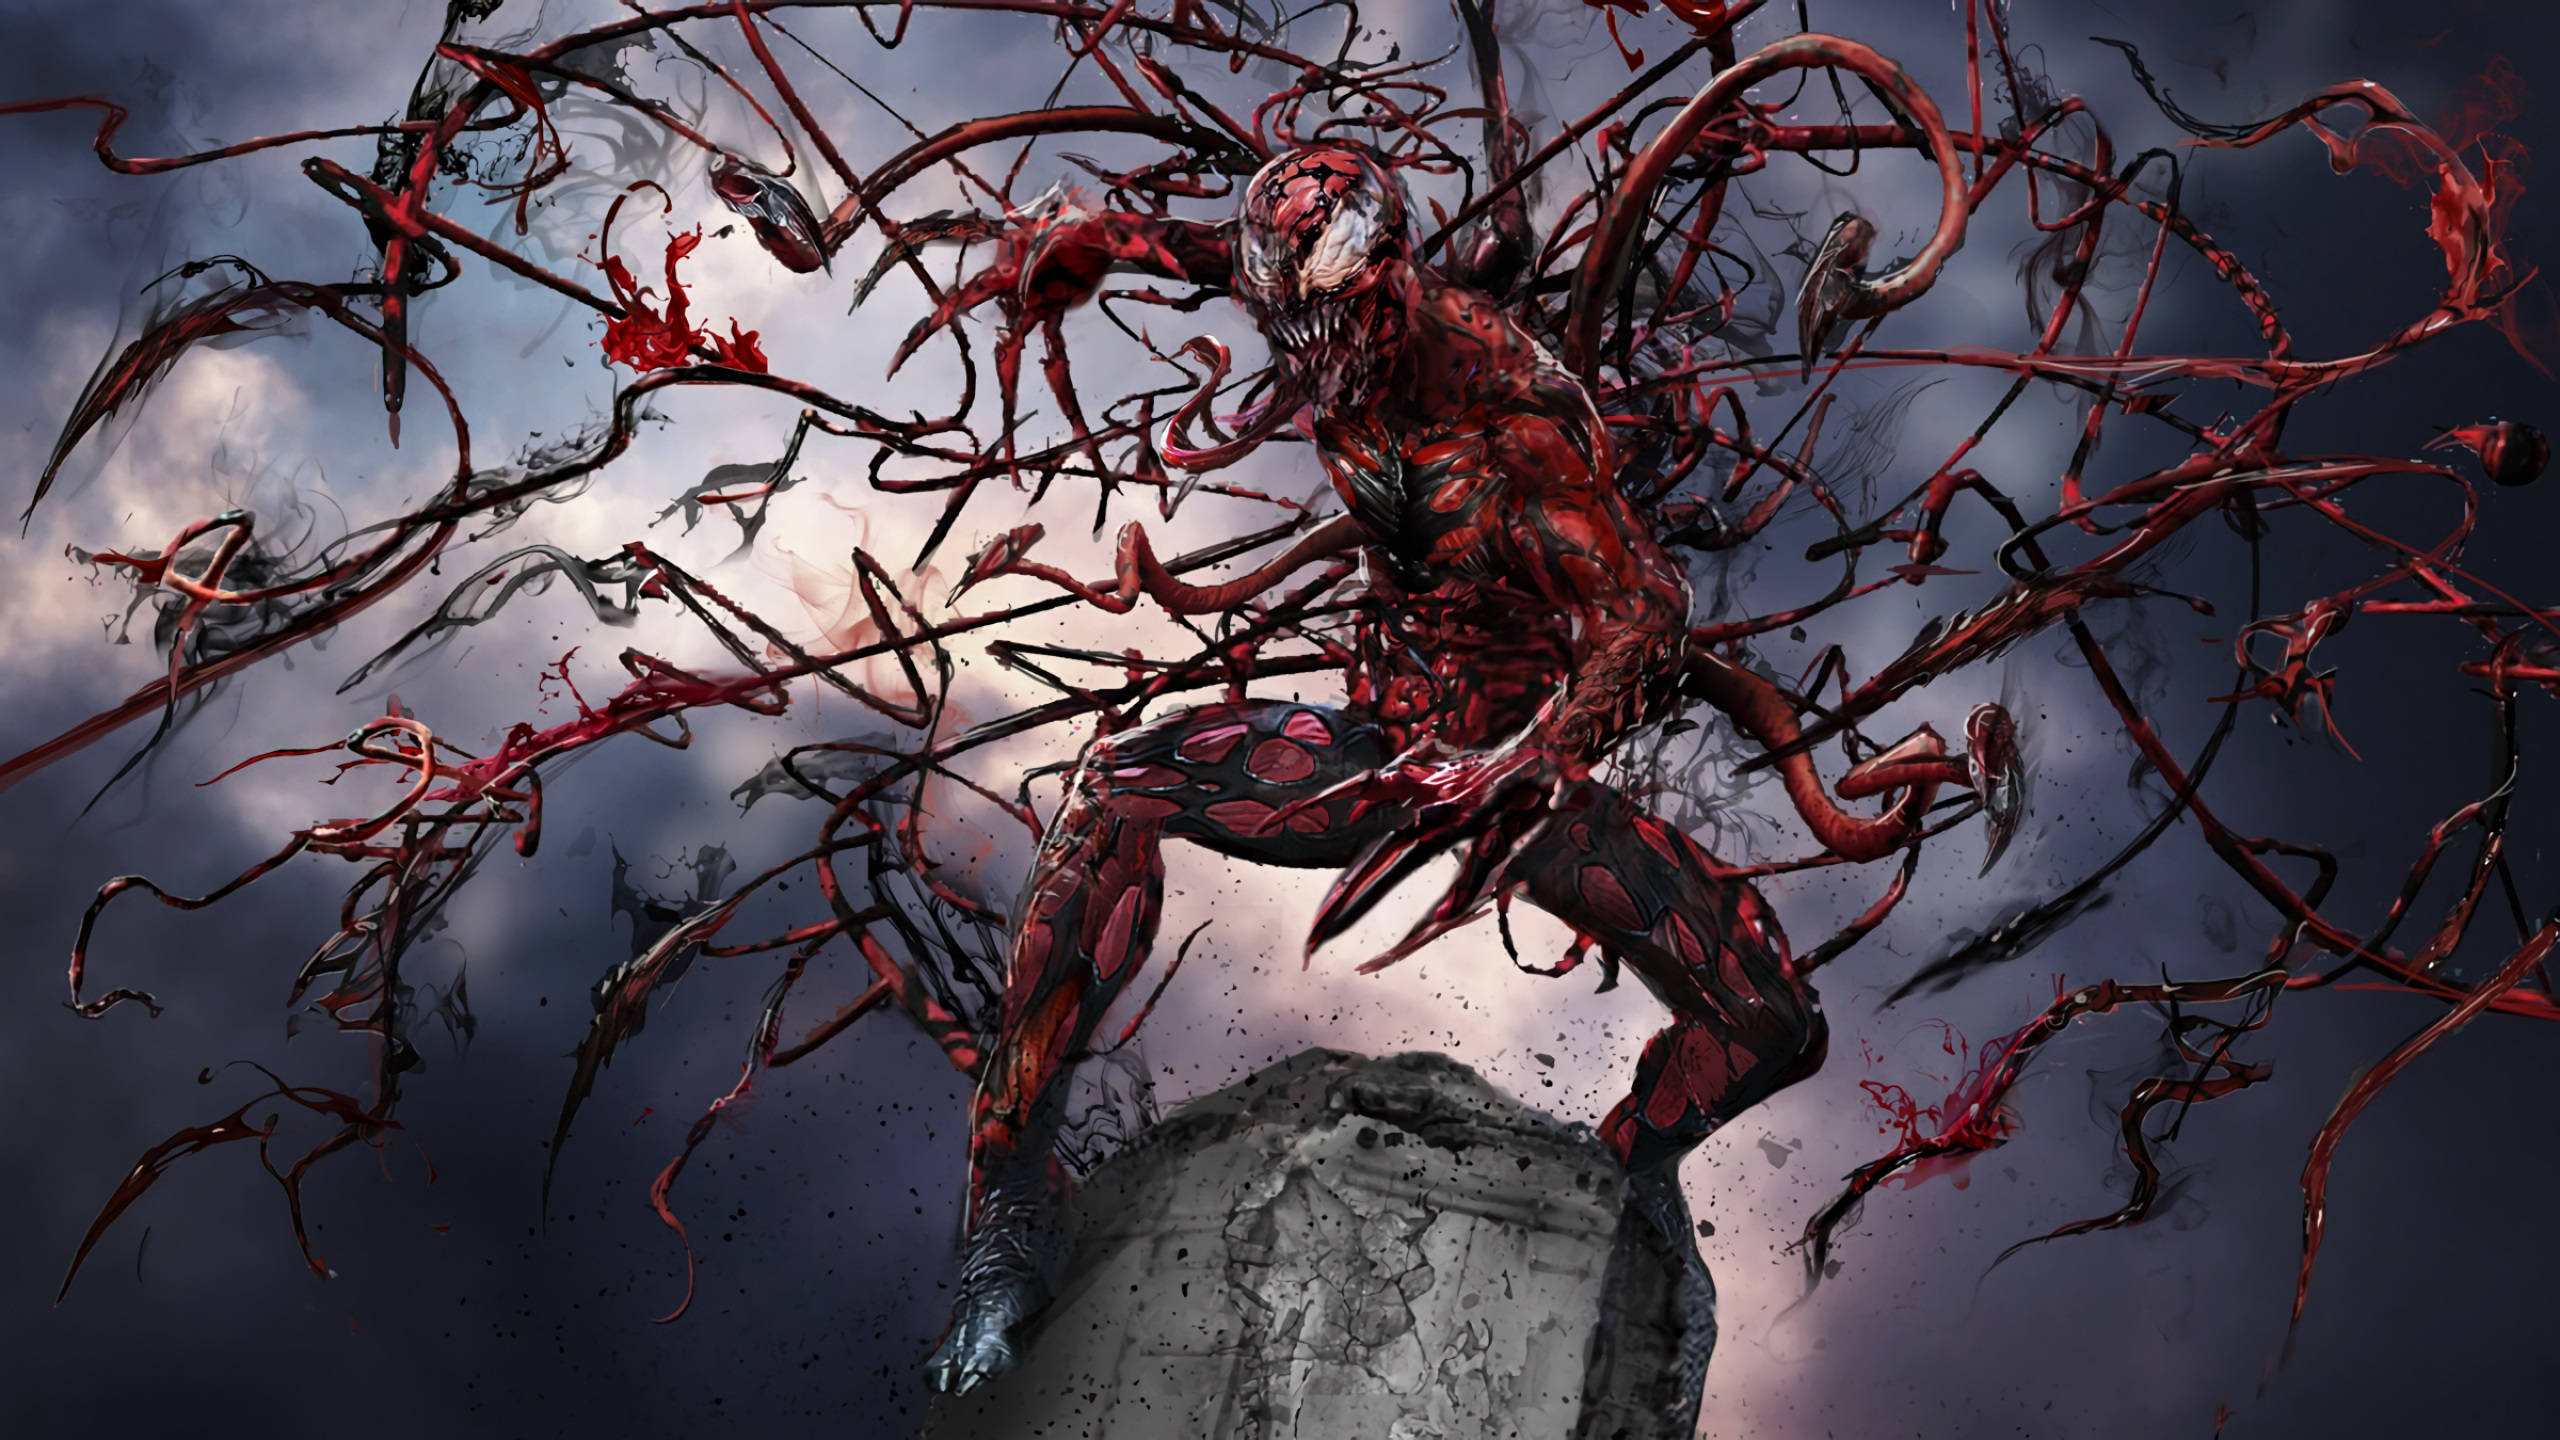 2560x1440 Marvel Carnage Horror Aesthetic Wallpaper